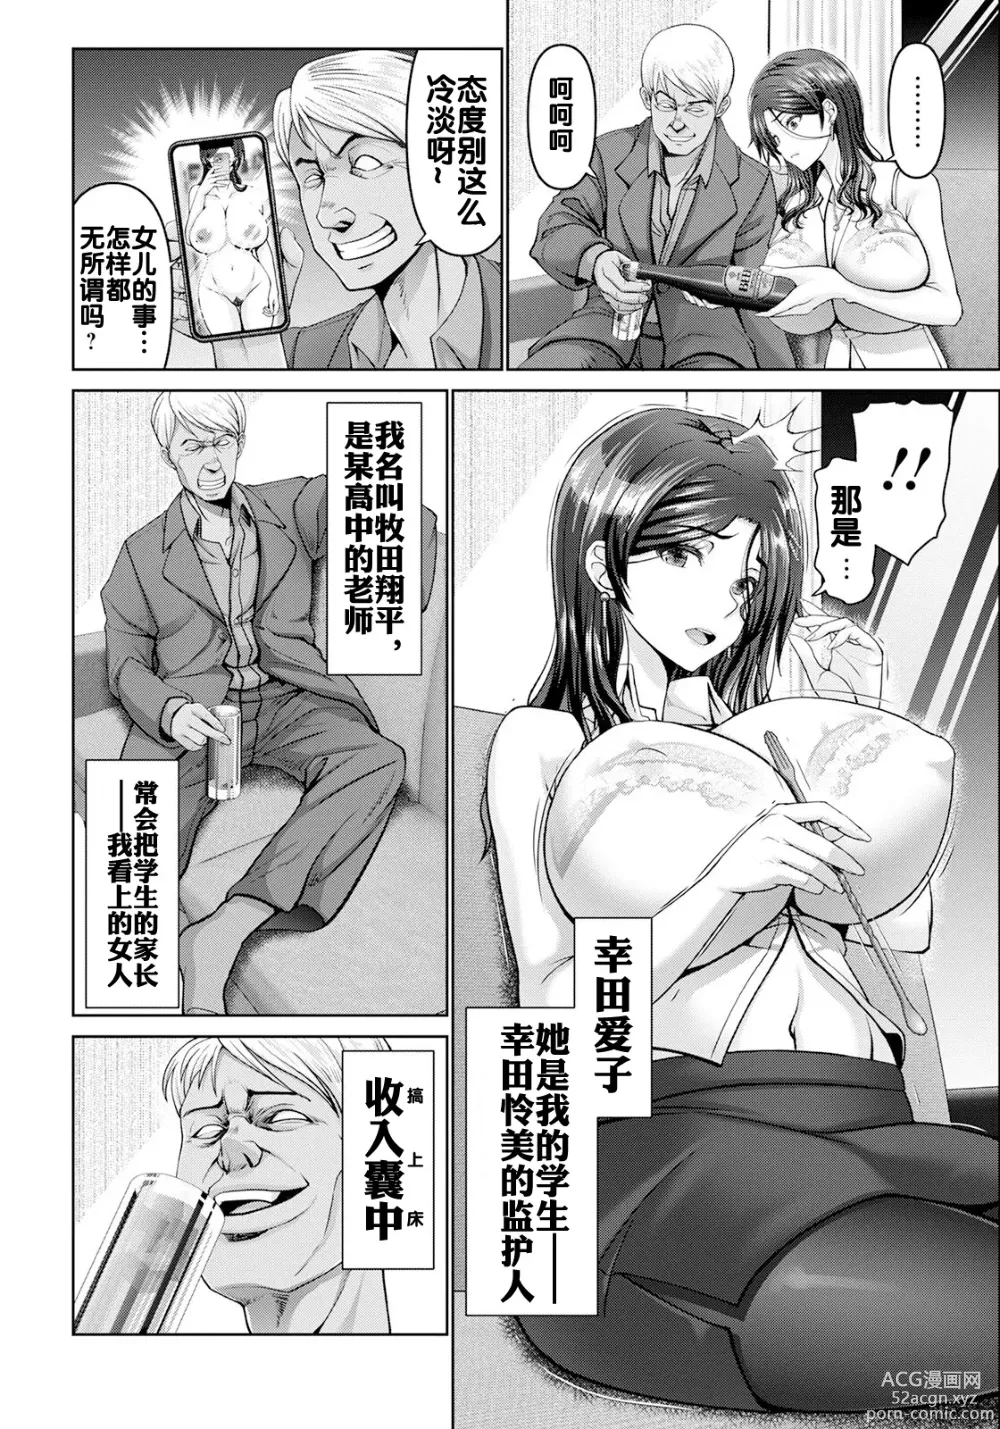 Page 4 of manga Shiawase  Razoku Keikaku Zenpen